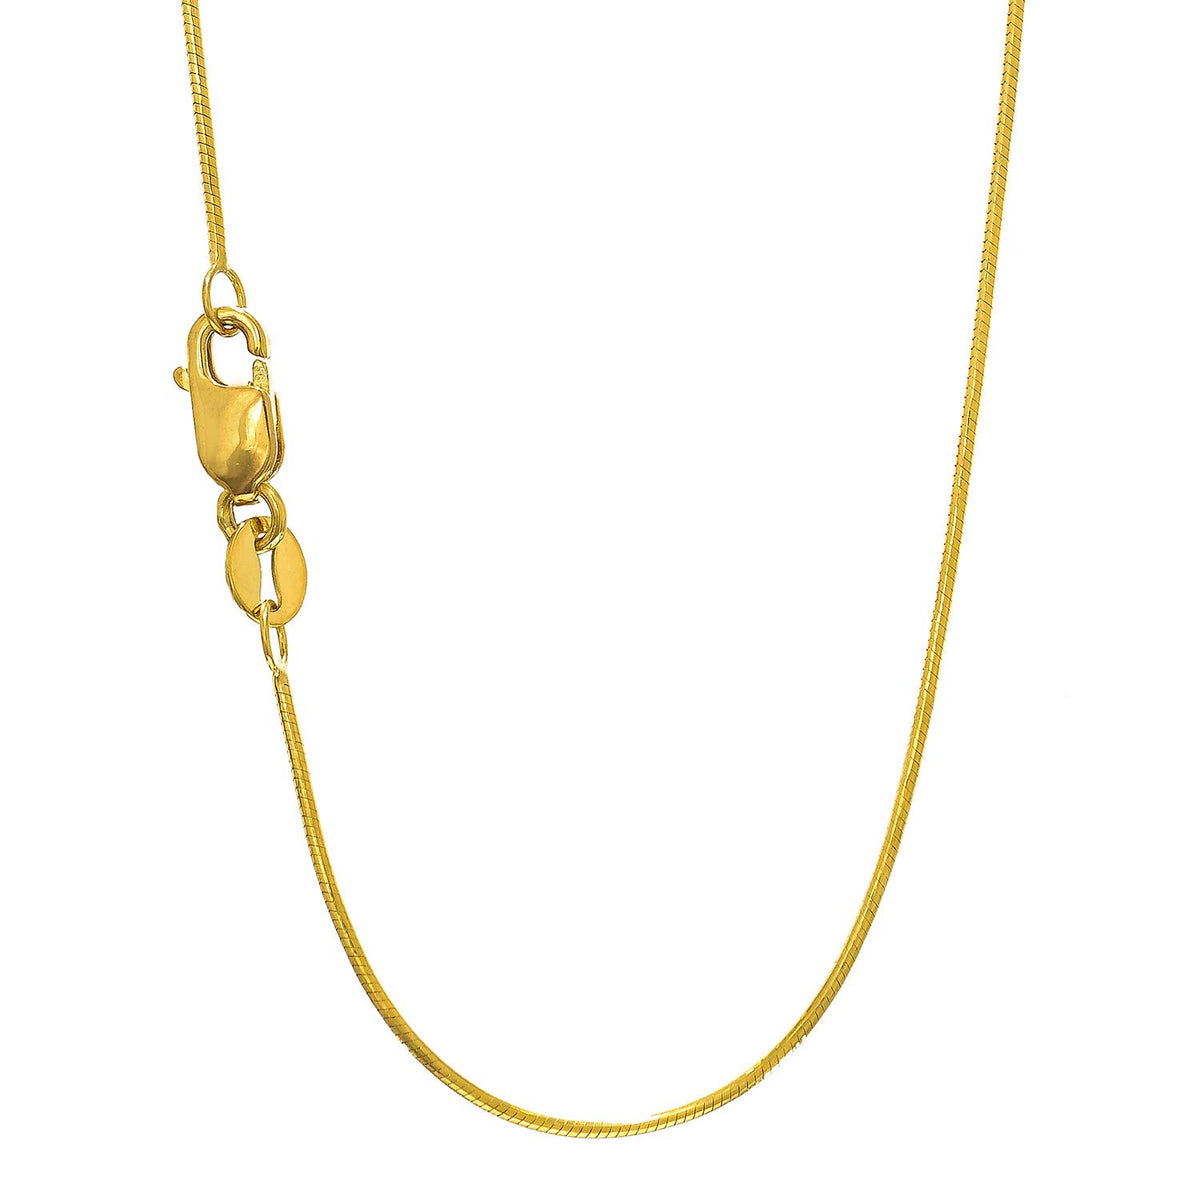 10 k gult guld oktagonalt ormkedja halsband, 0,9 mm, 20" fina designersmycken för män och kvinnor